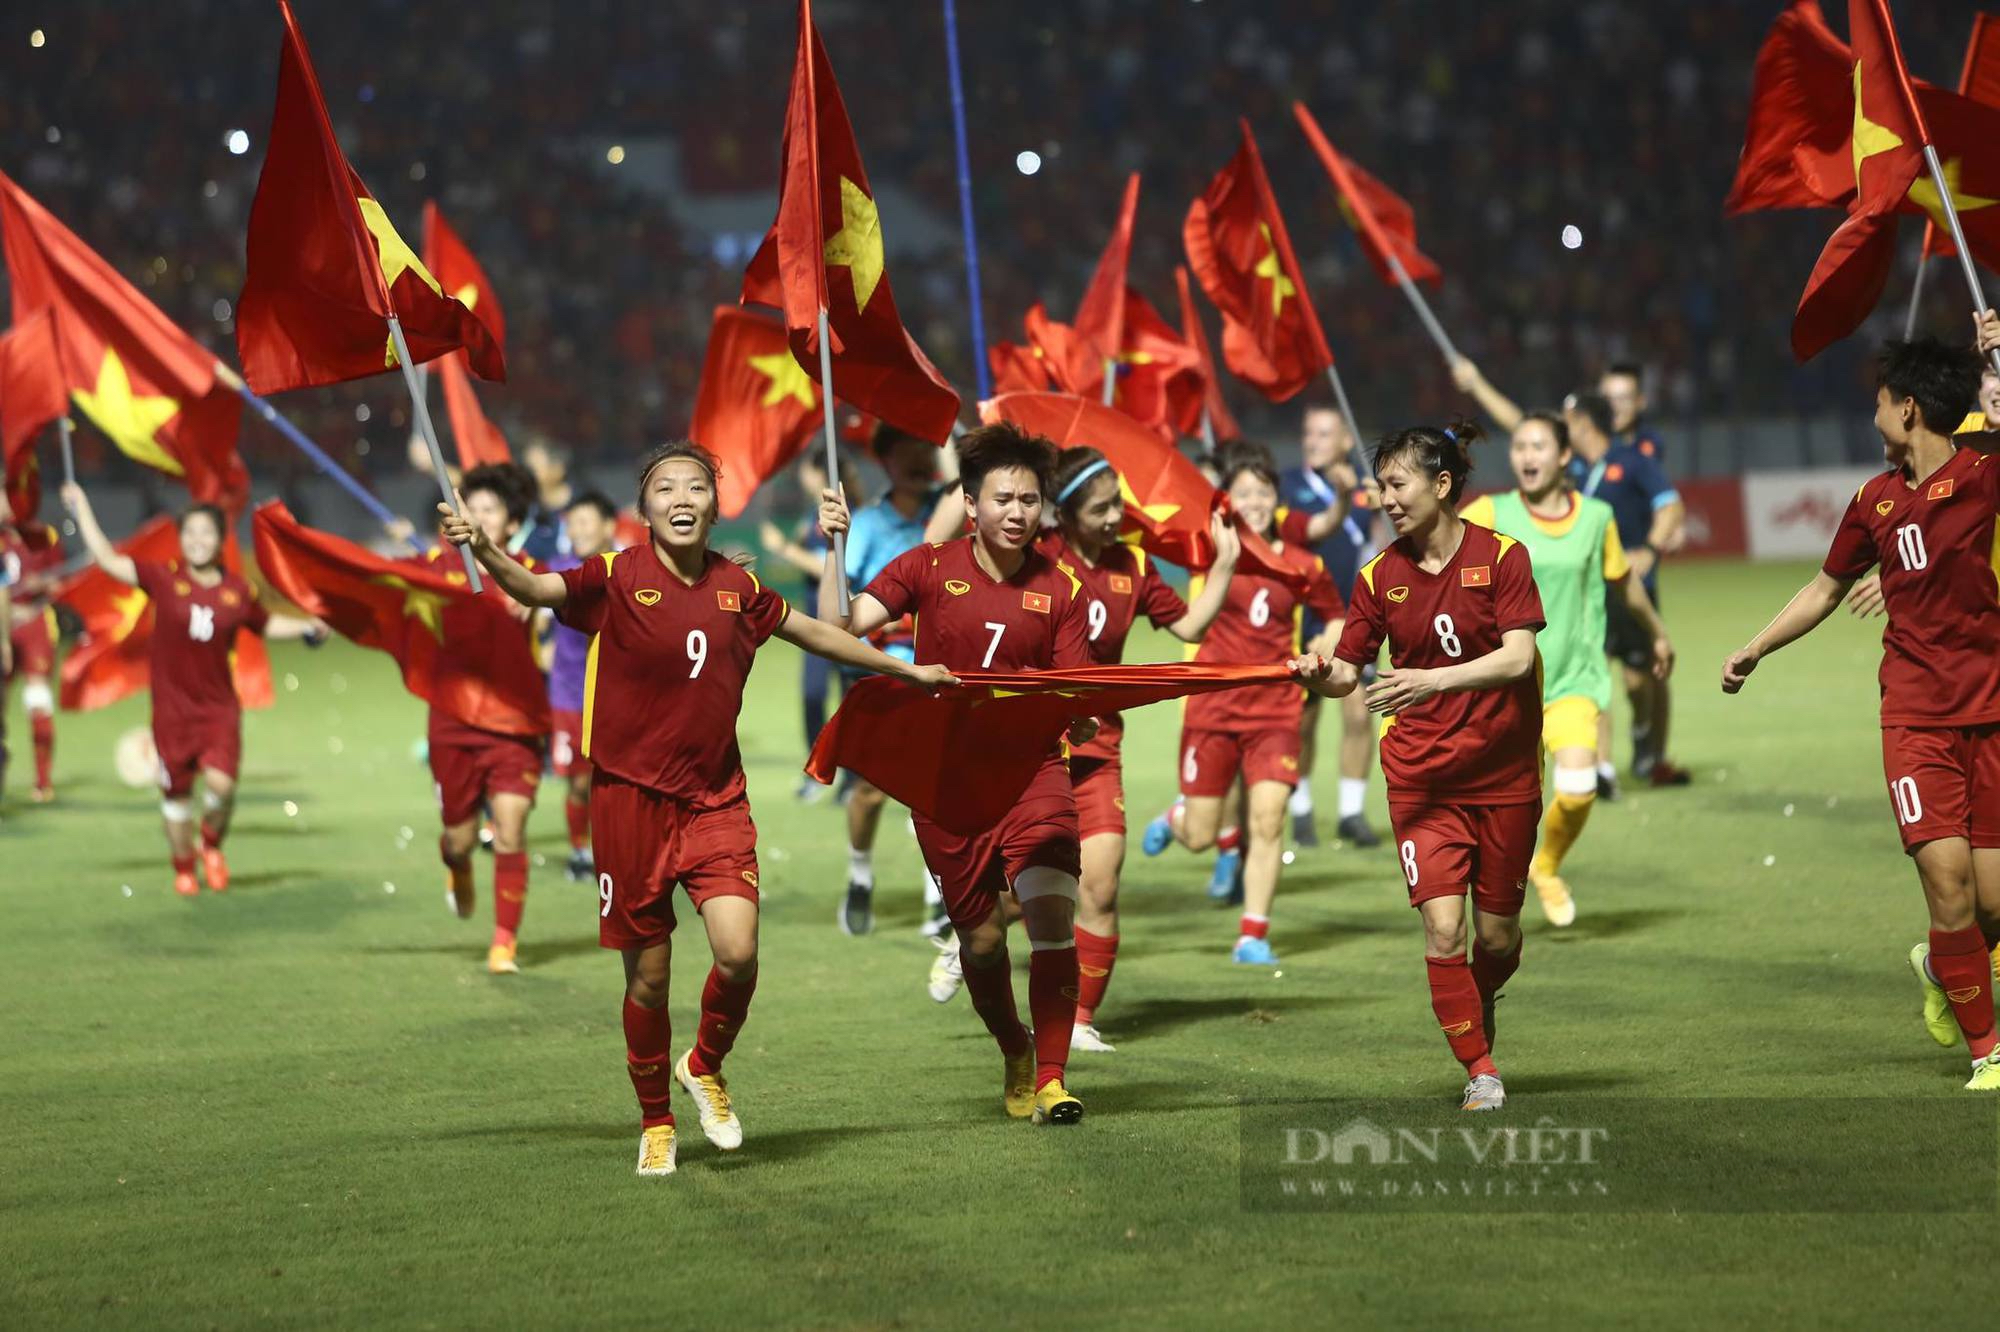 ĐT nữ Việt Nam phất cờ Tổ quốc trong các giải đấu quốc tế là hình ảnh đầy tinh thần thể thao, quả cảm và tự hào. Hãy cùng xem lại những khoảnh khắc này tại đây, bạn sẽ cảm nhận được một yếu tố không thể thiếu trong bóng đá - lòng đam mê và tình yêu đối với quê hương.